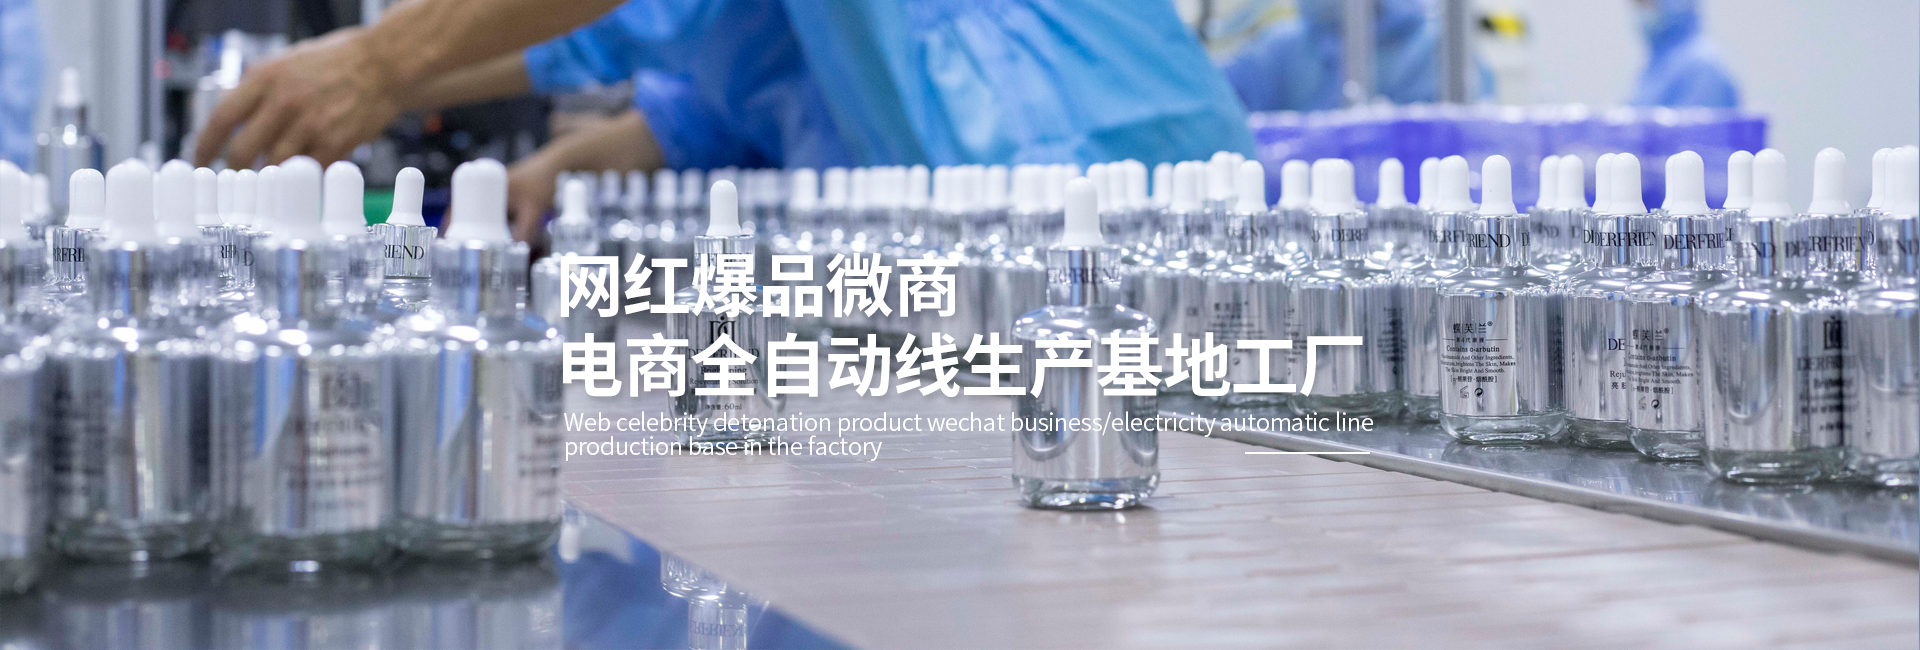 广州柏文生物科技发展有限公司